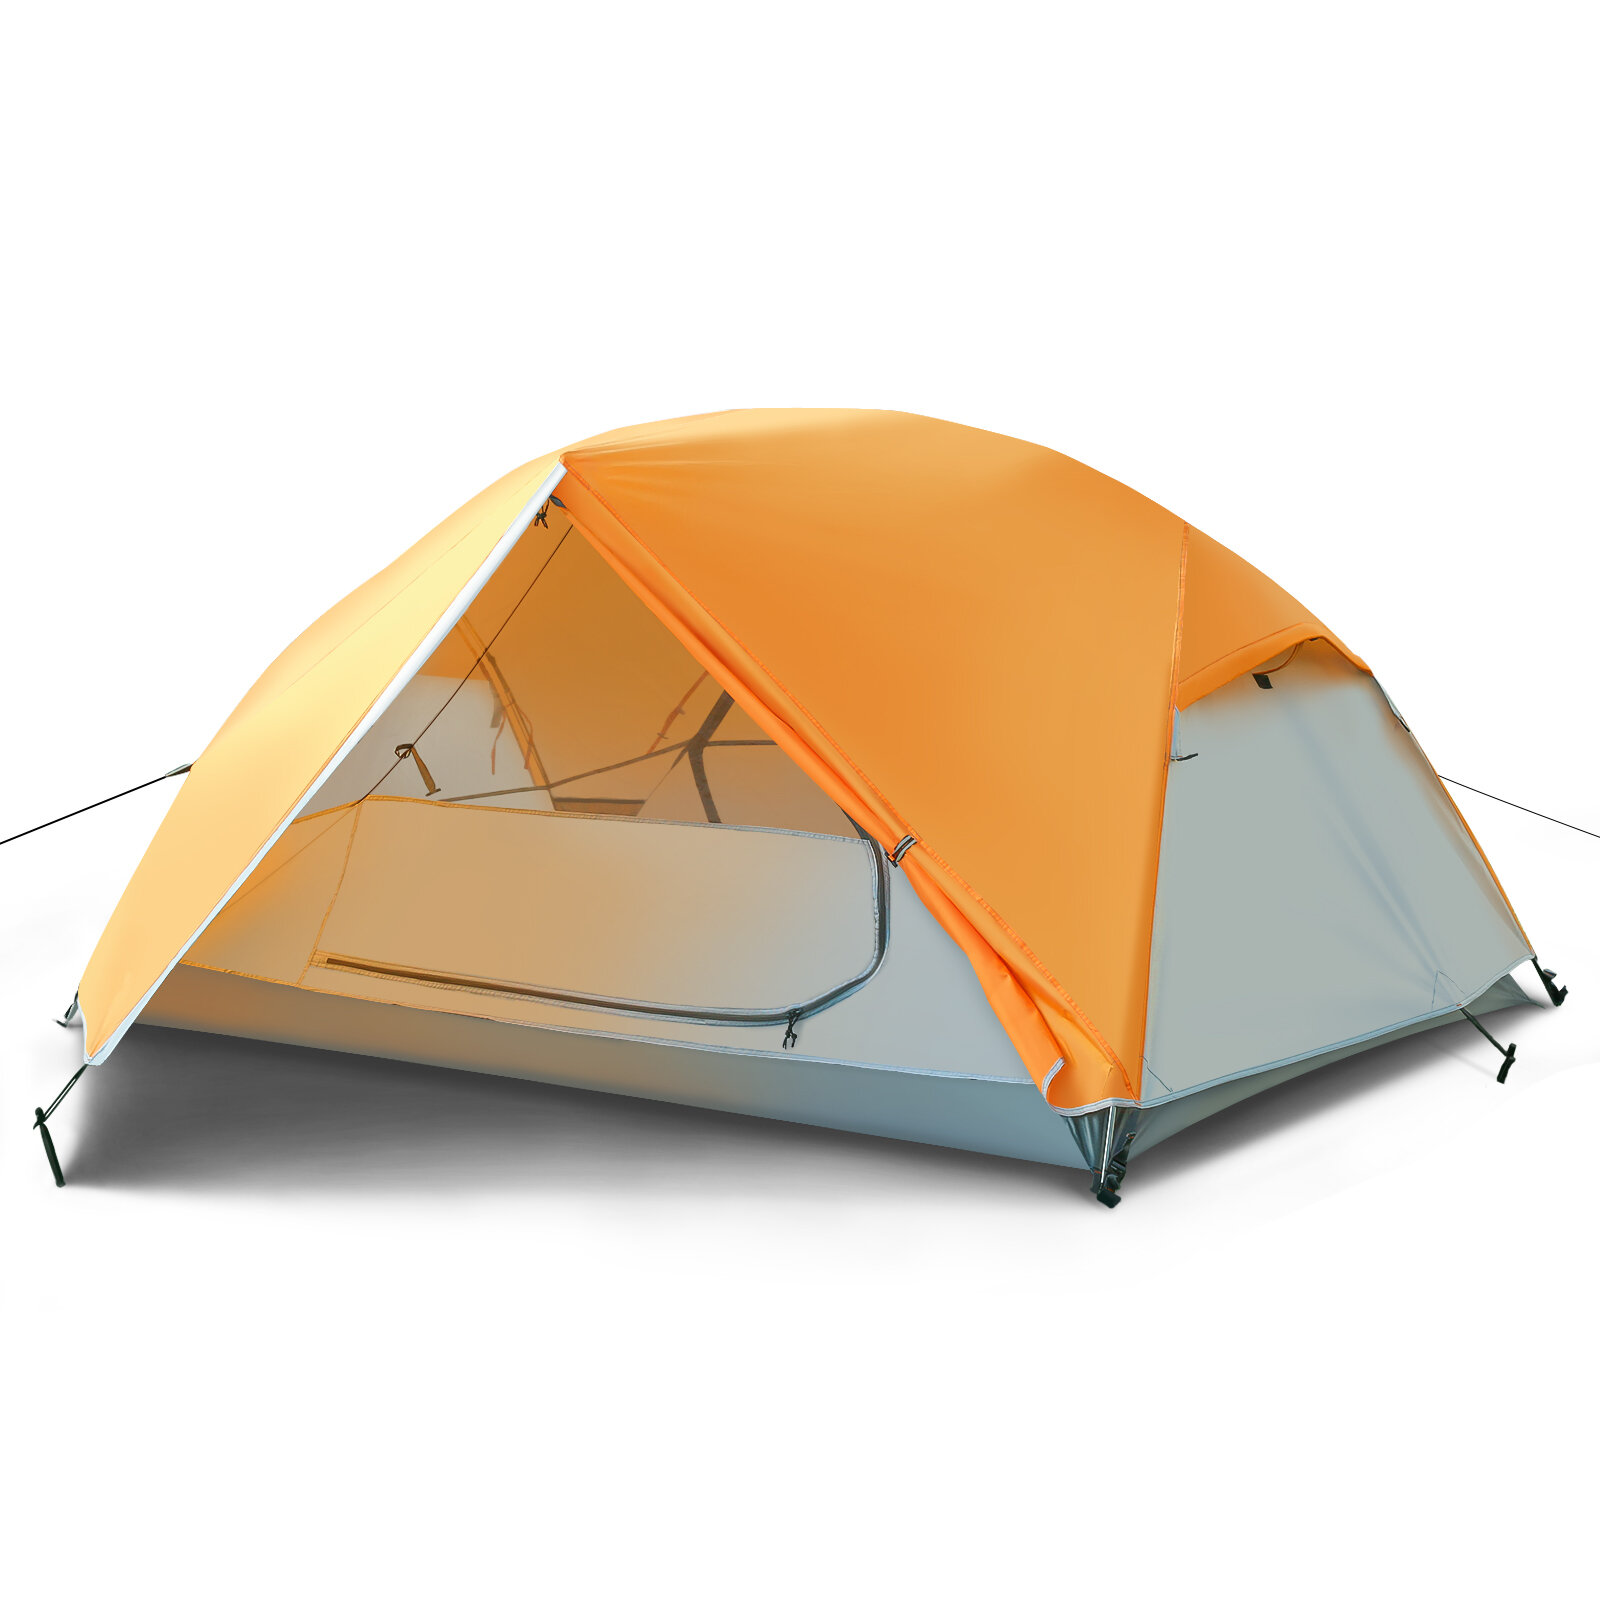 Tooca 2-Personen-Campingzelte Rucksackzelte Leichte tragbare wasserdichte Zelte für Outdoor-Camping, Wandern, einfach aufzubauen, mit Tragetasche